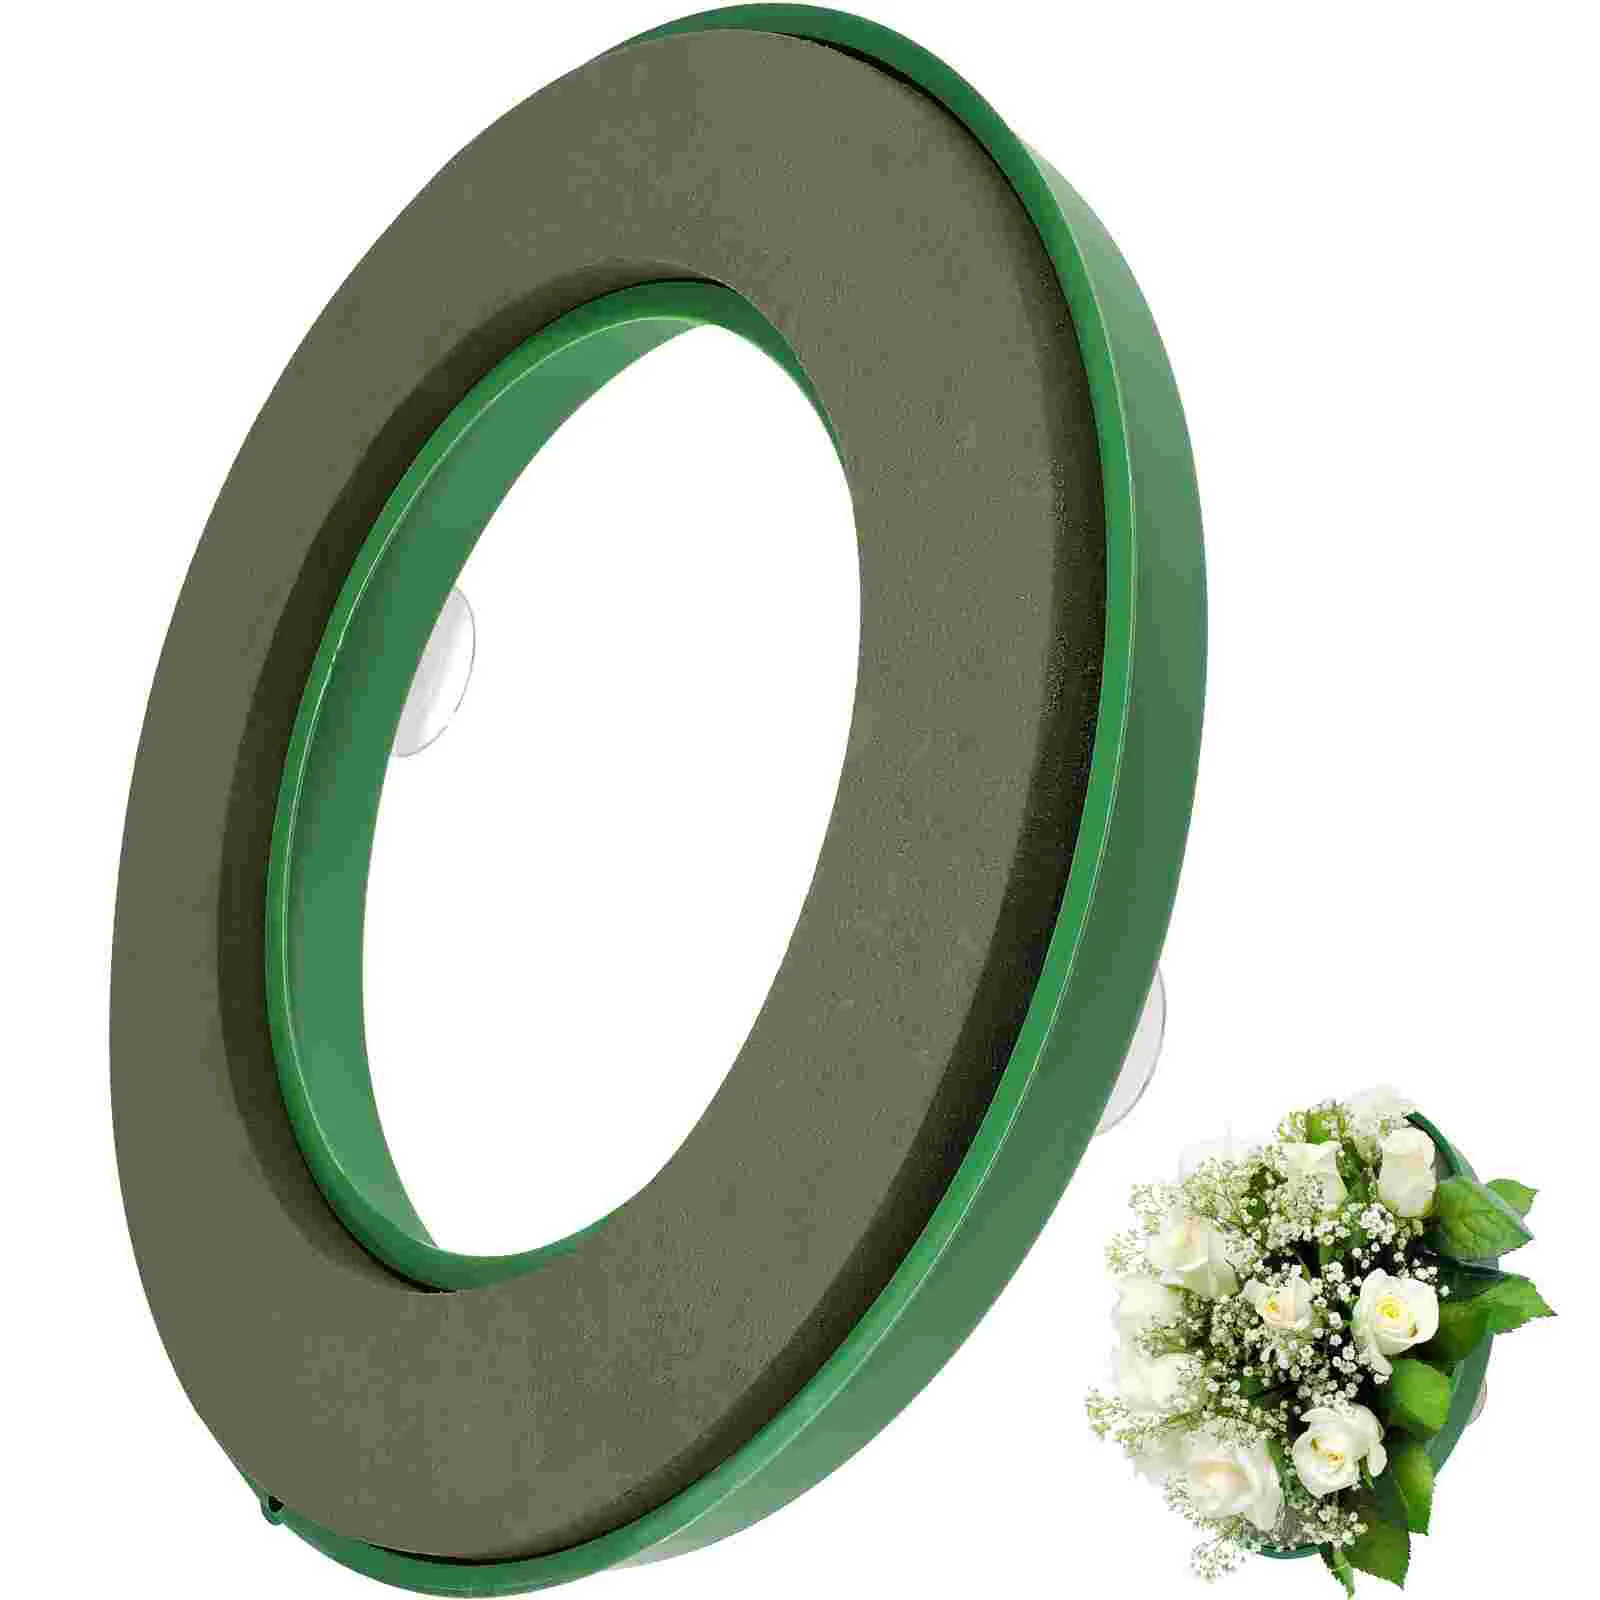 Foam Ring Wreath Base Wedding Car Supplies Wreath Making Supplies Wreath Form Wreath Ring Holder